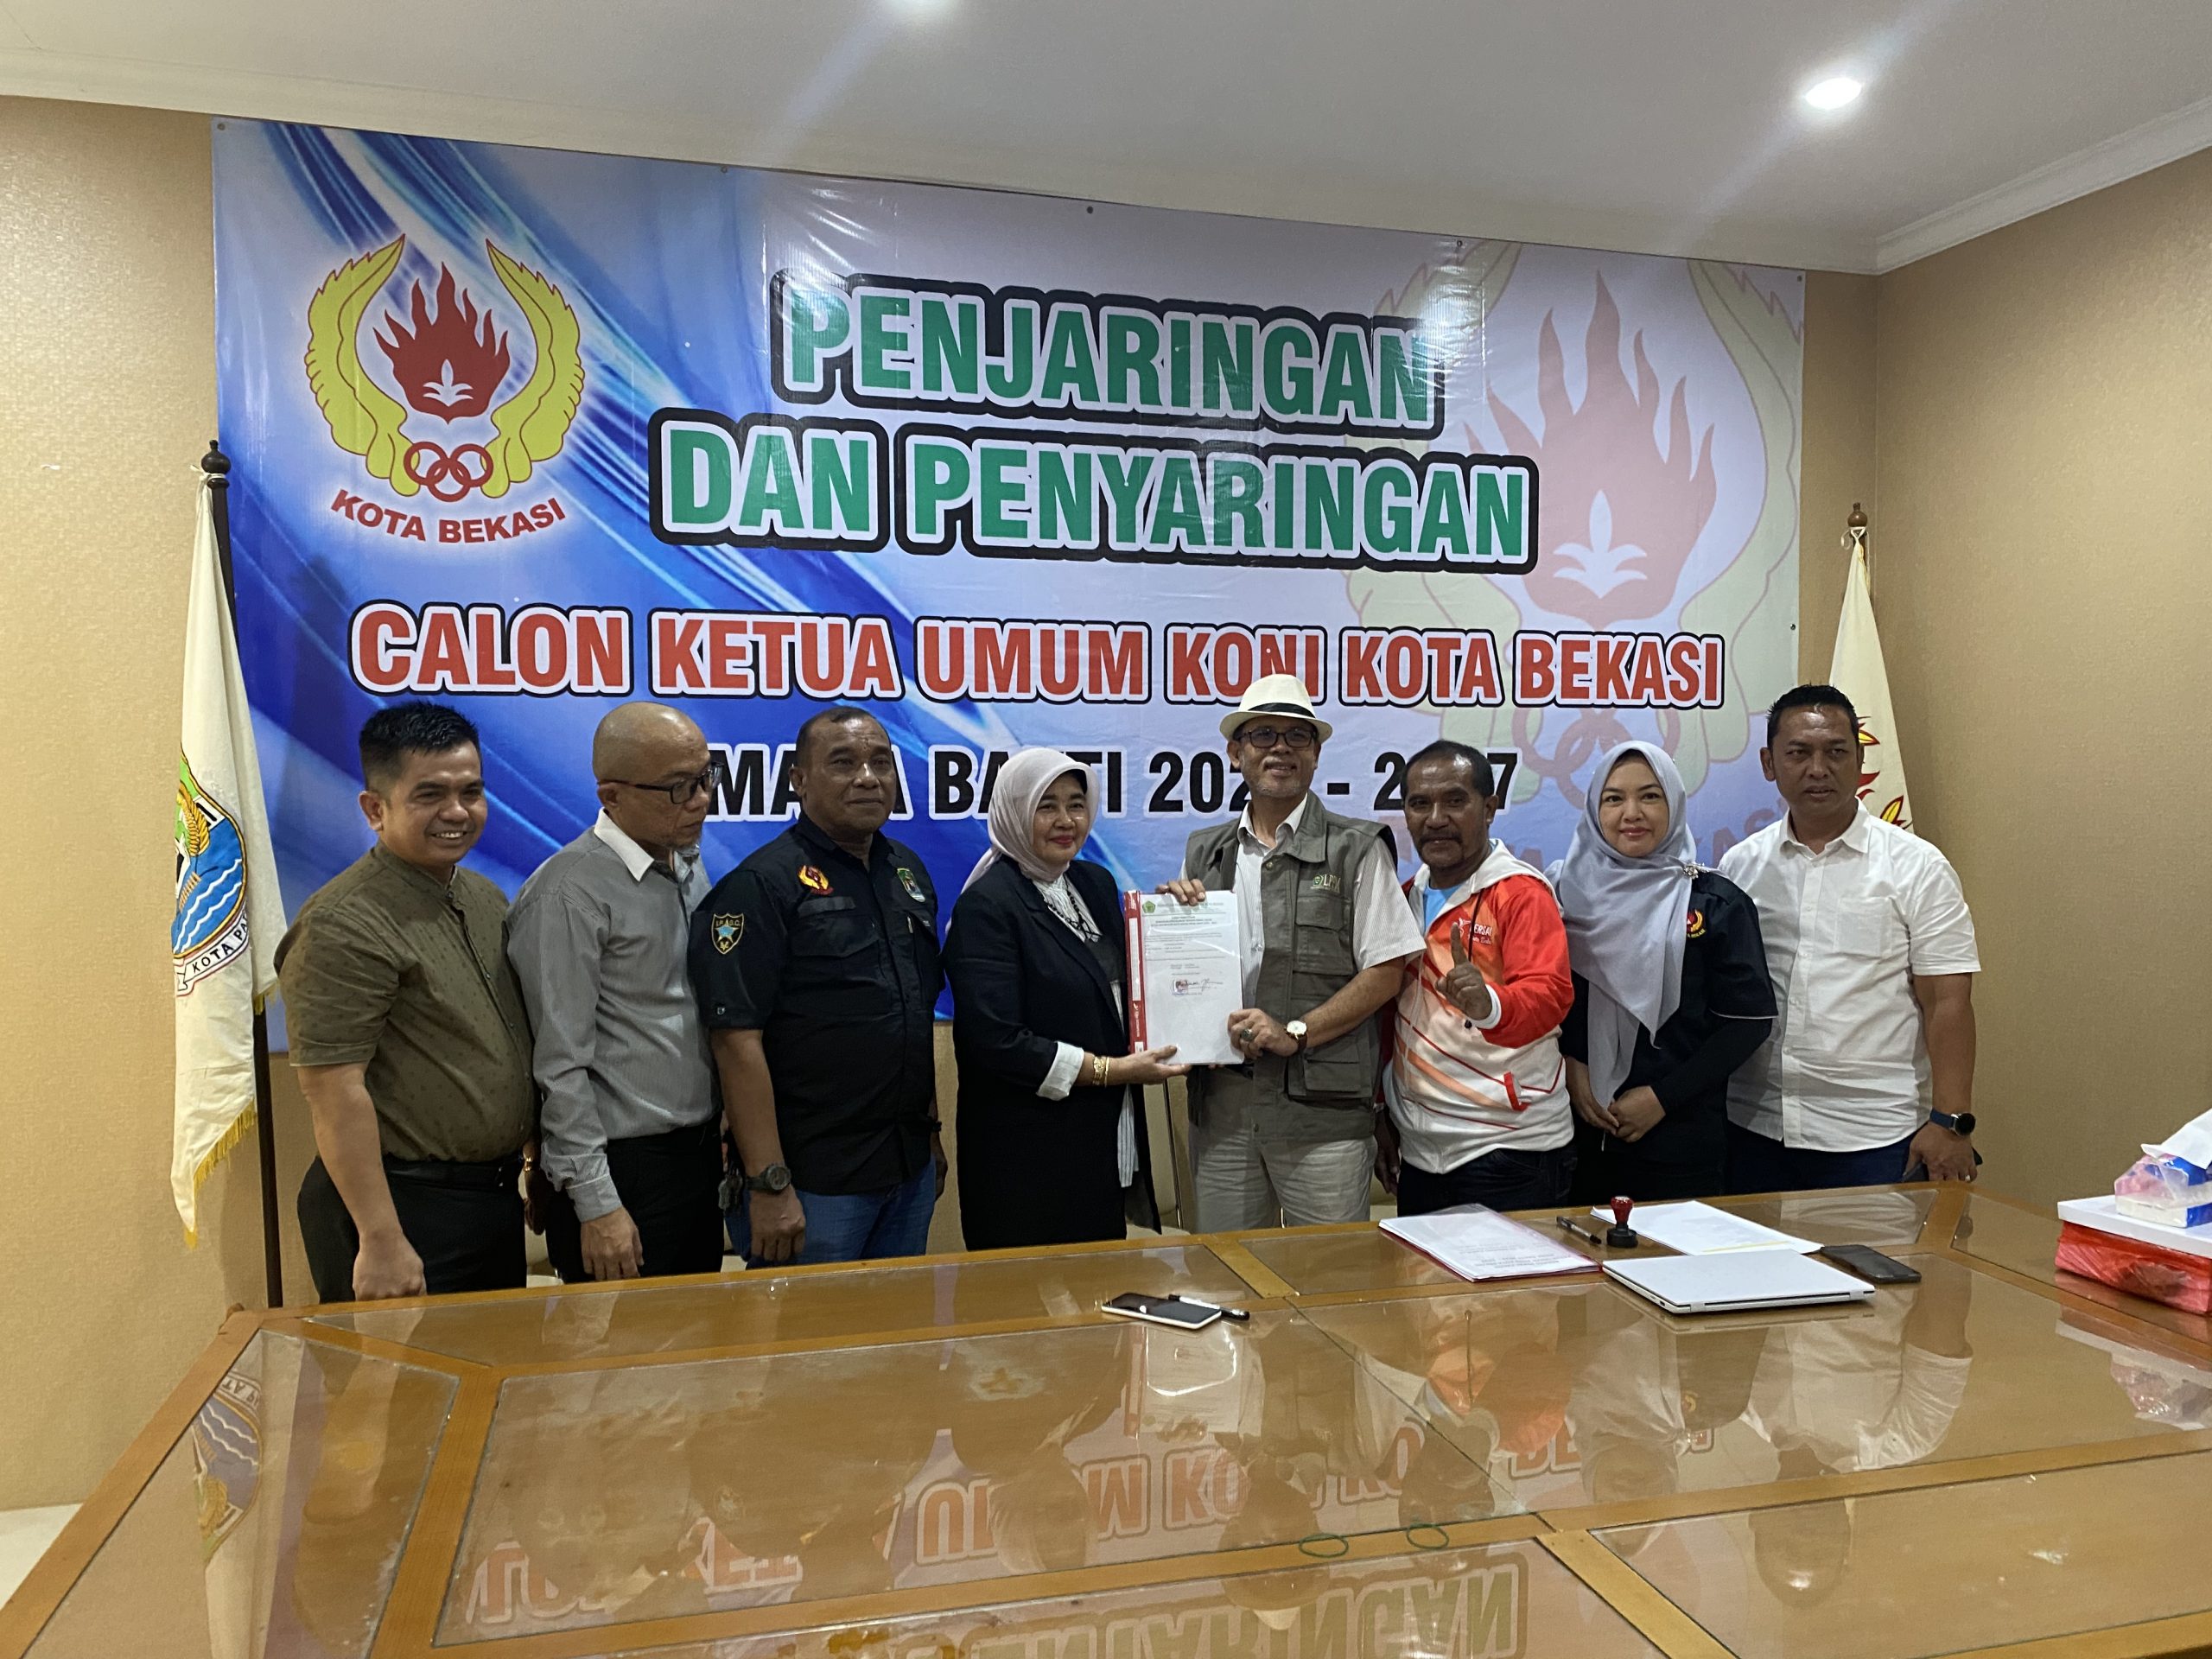 Ekowati secara resmi menyerahkan formulir pendaftaran sebagai Bacalon Ketum KONI Kota Bekasi.